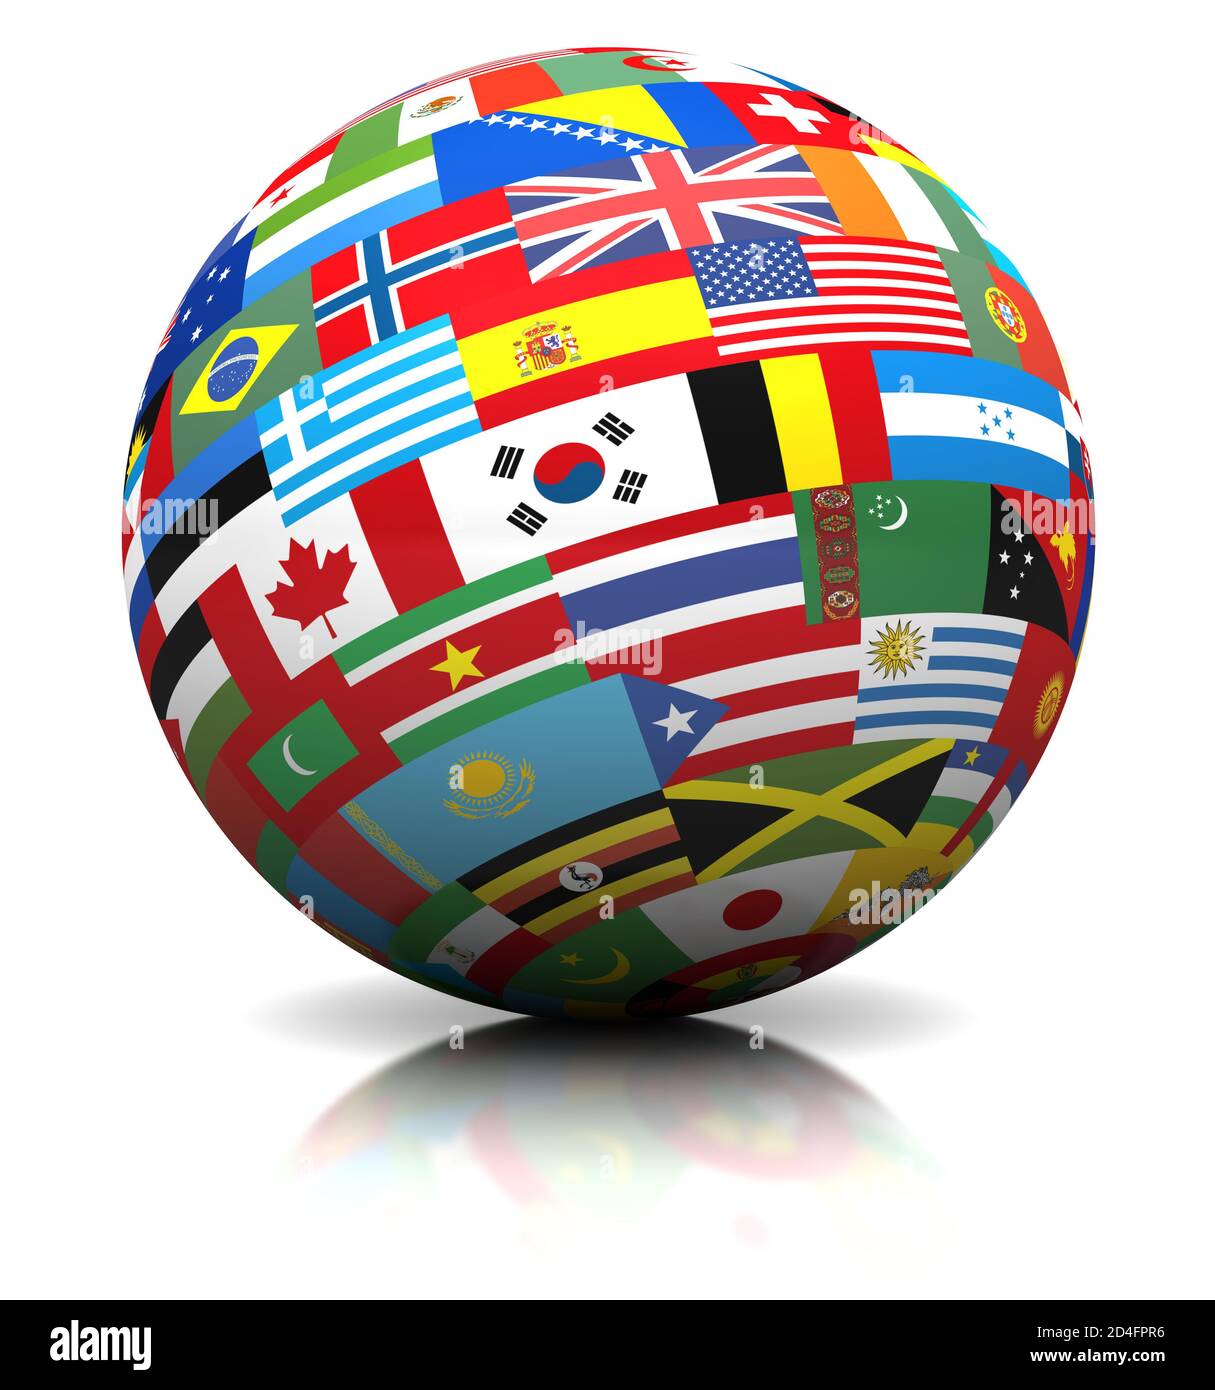 Globus der Weltflaggen, internationale Symbole der Länder weltweit, weißer Hintergrund, ausgeschnitten Stockfoto